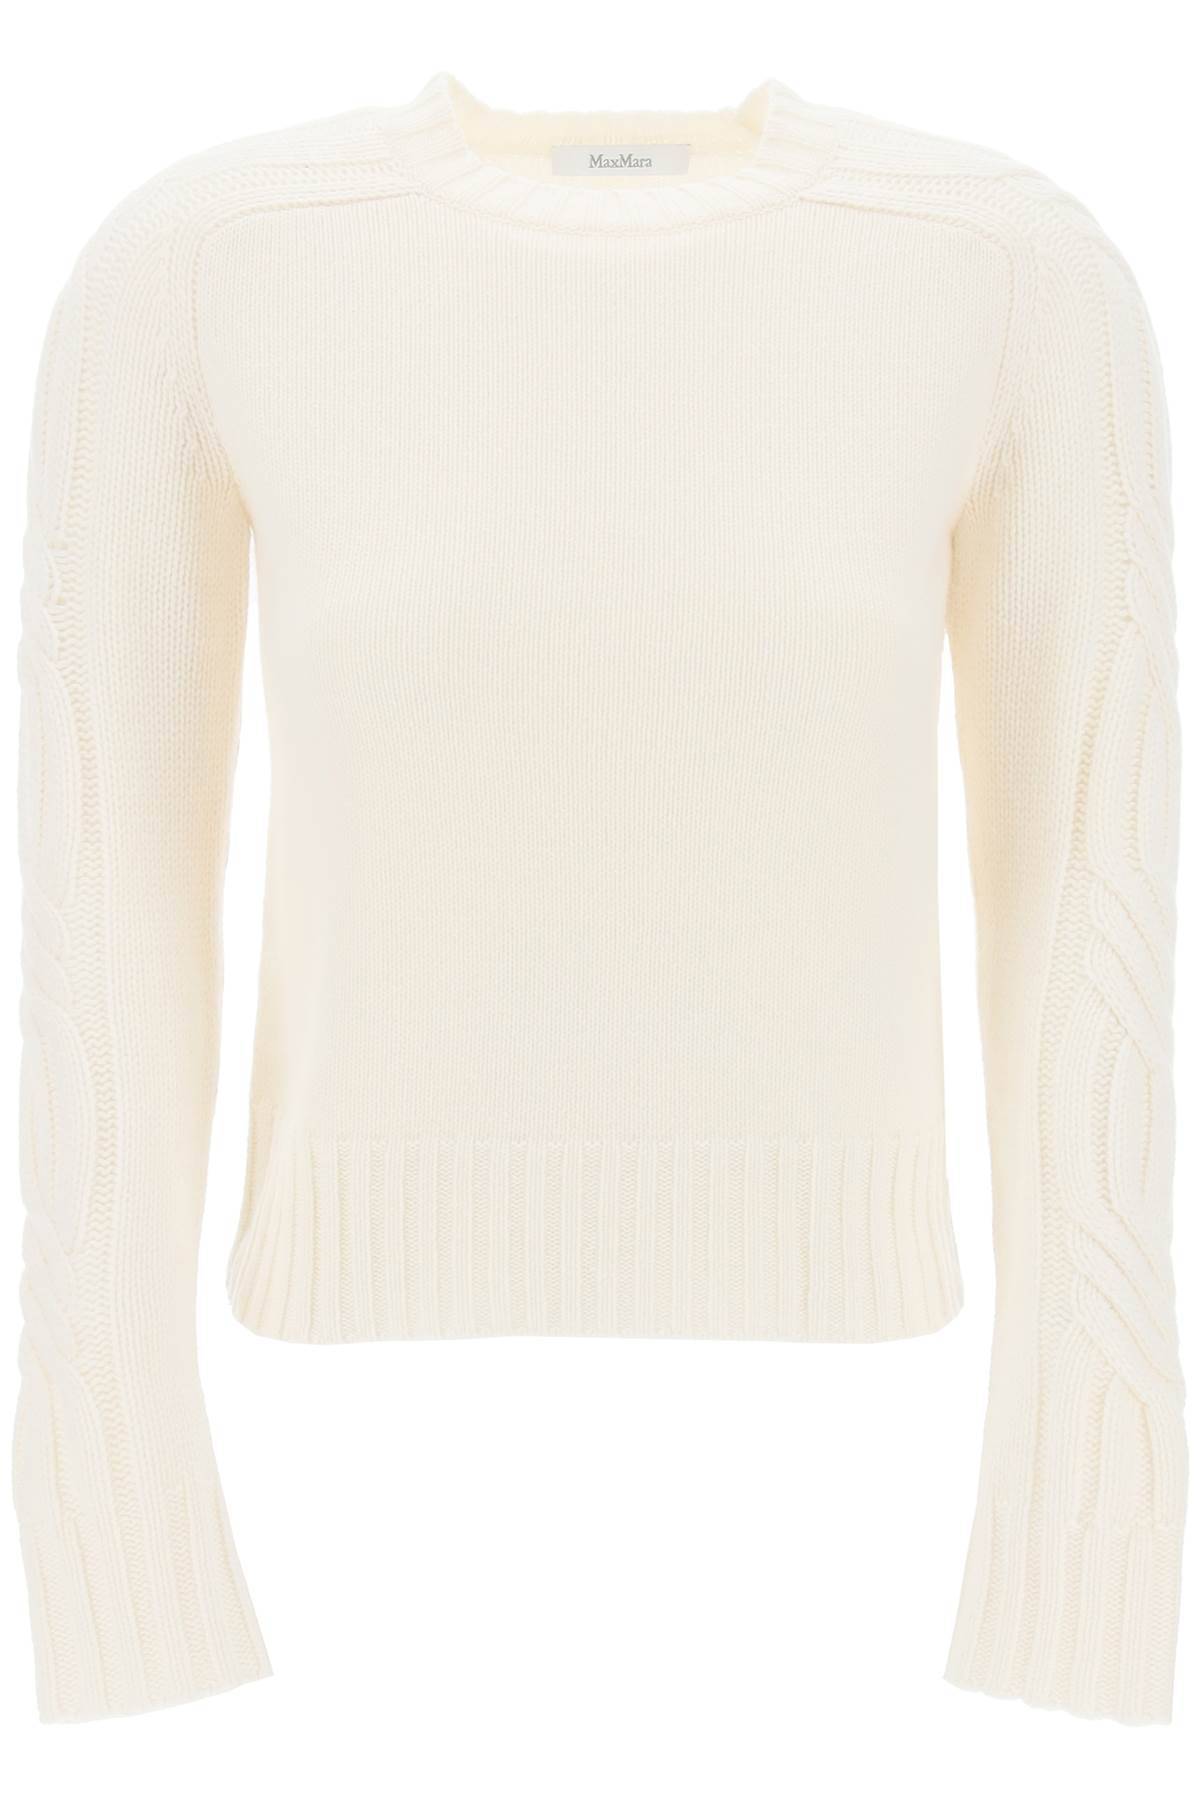 Max Mara Cashmere Berlin Pullover Sweater In White